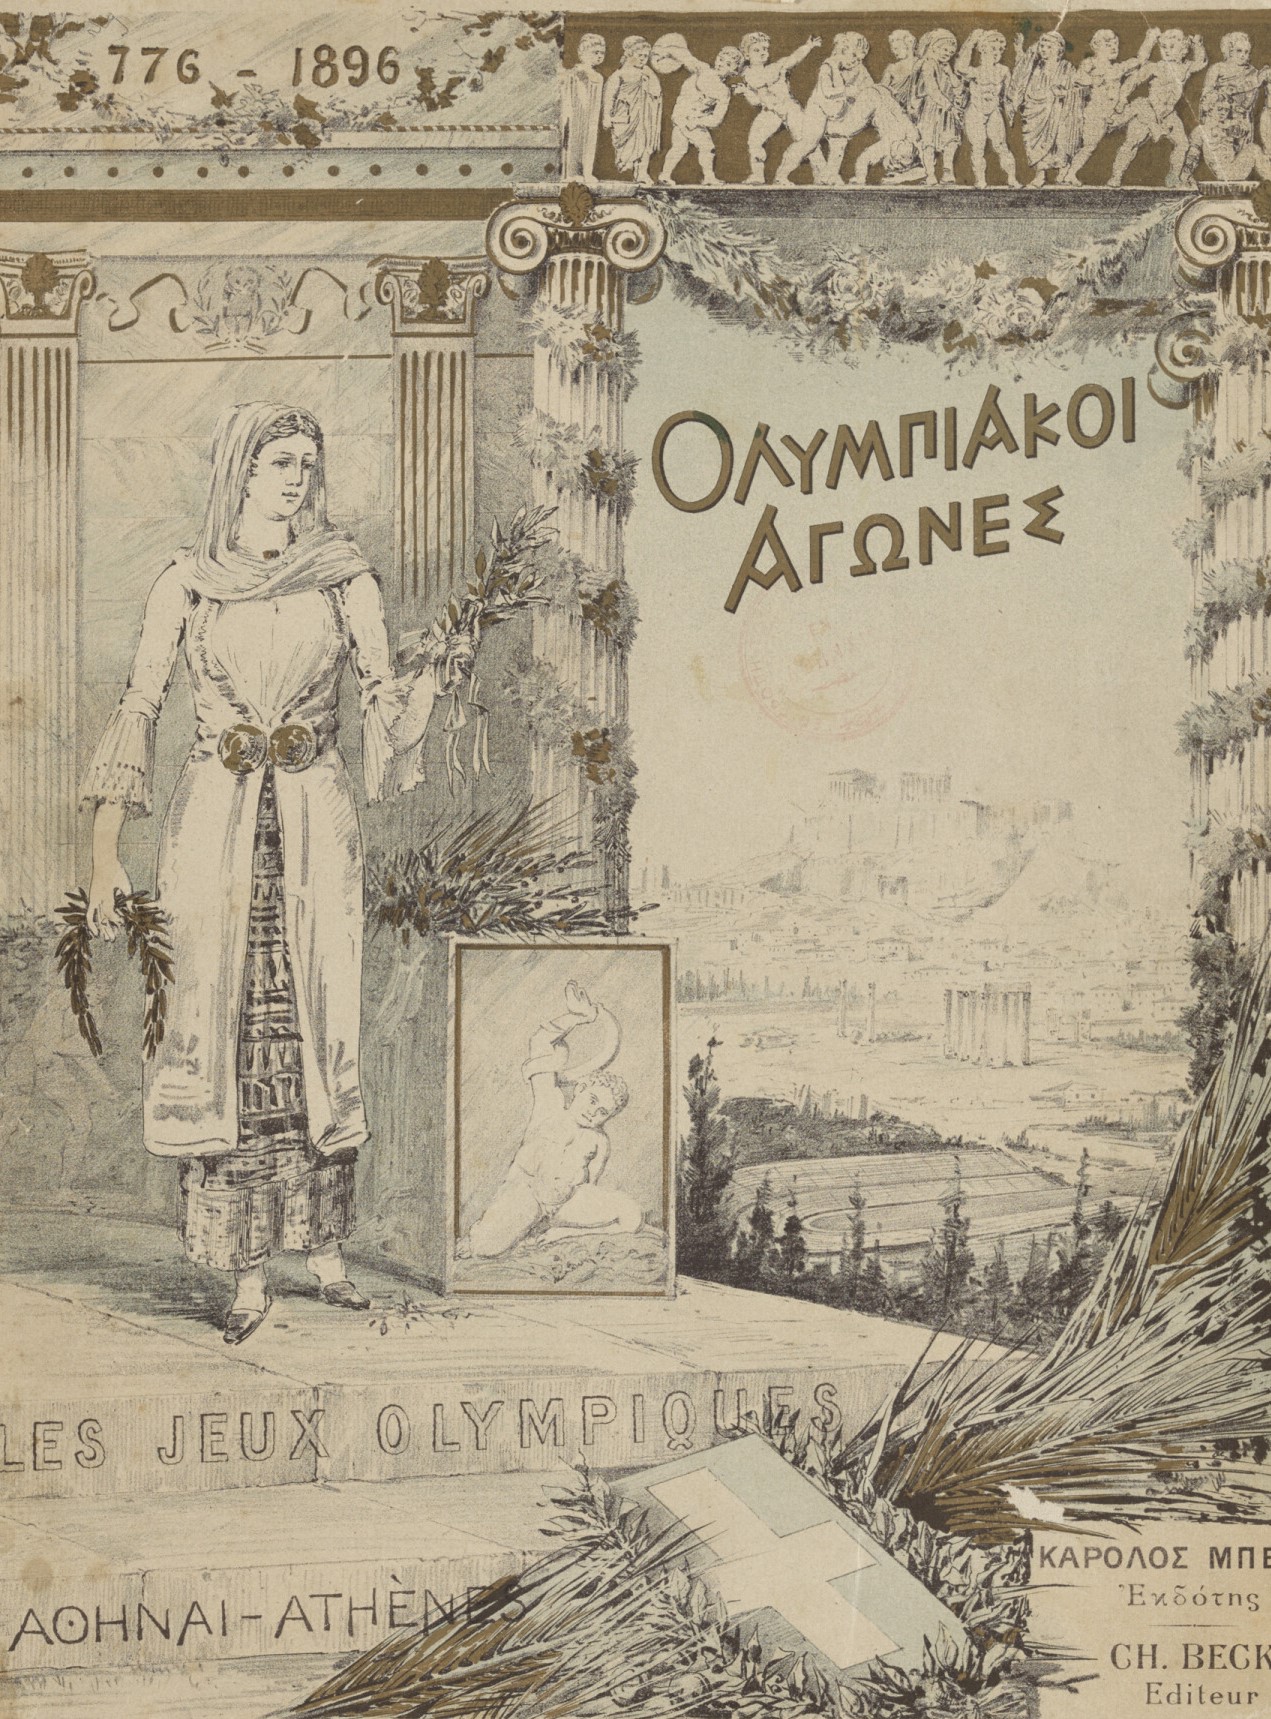 Couverture de l’album commémoratif des JO d’Athènes de 1896